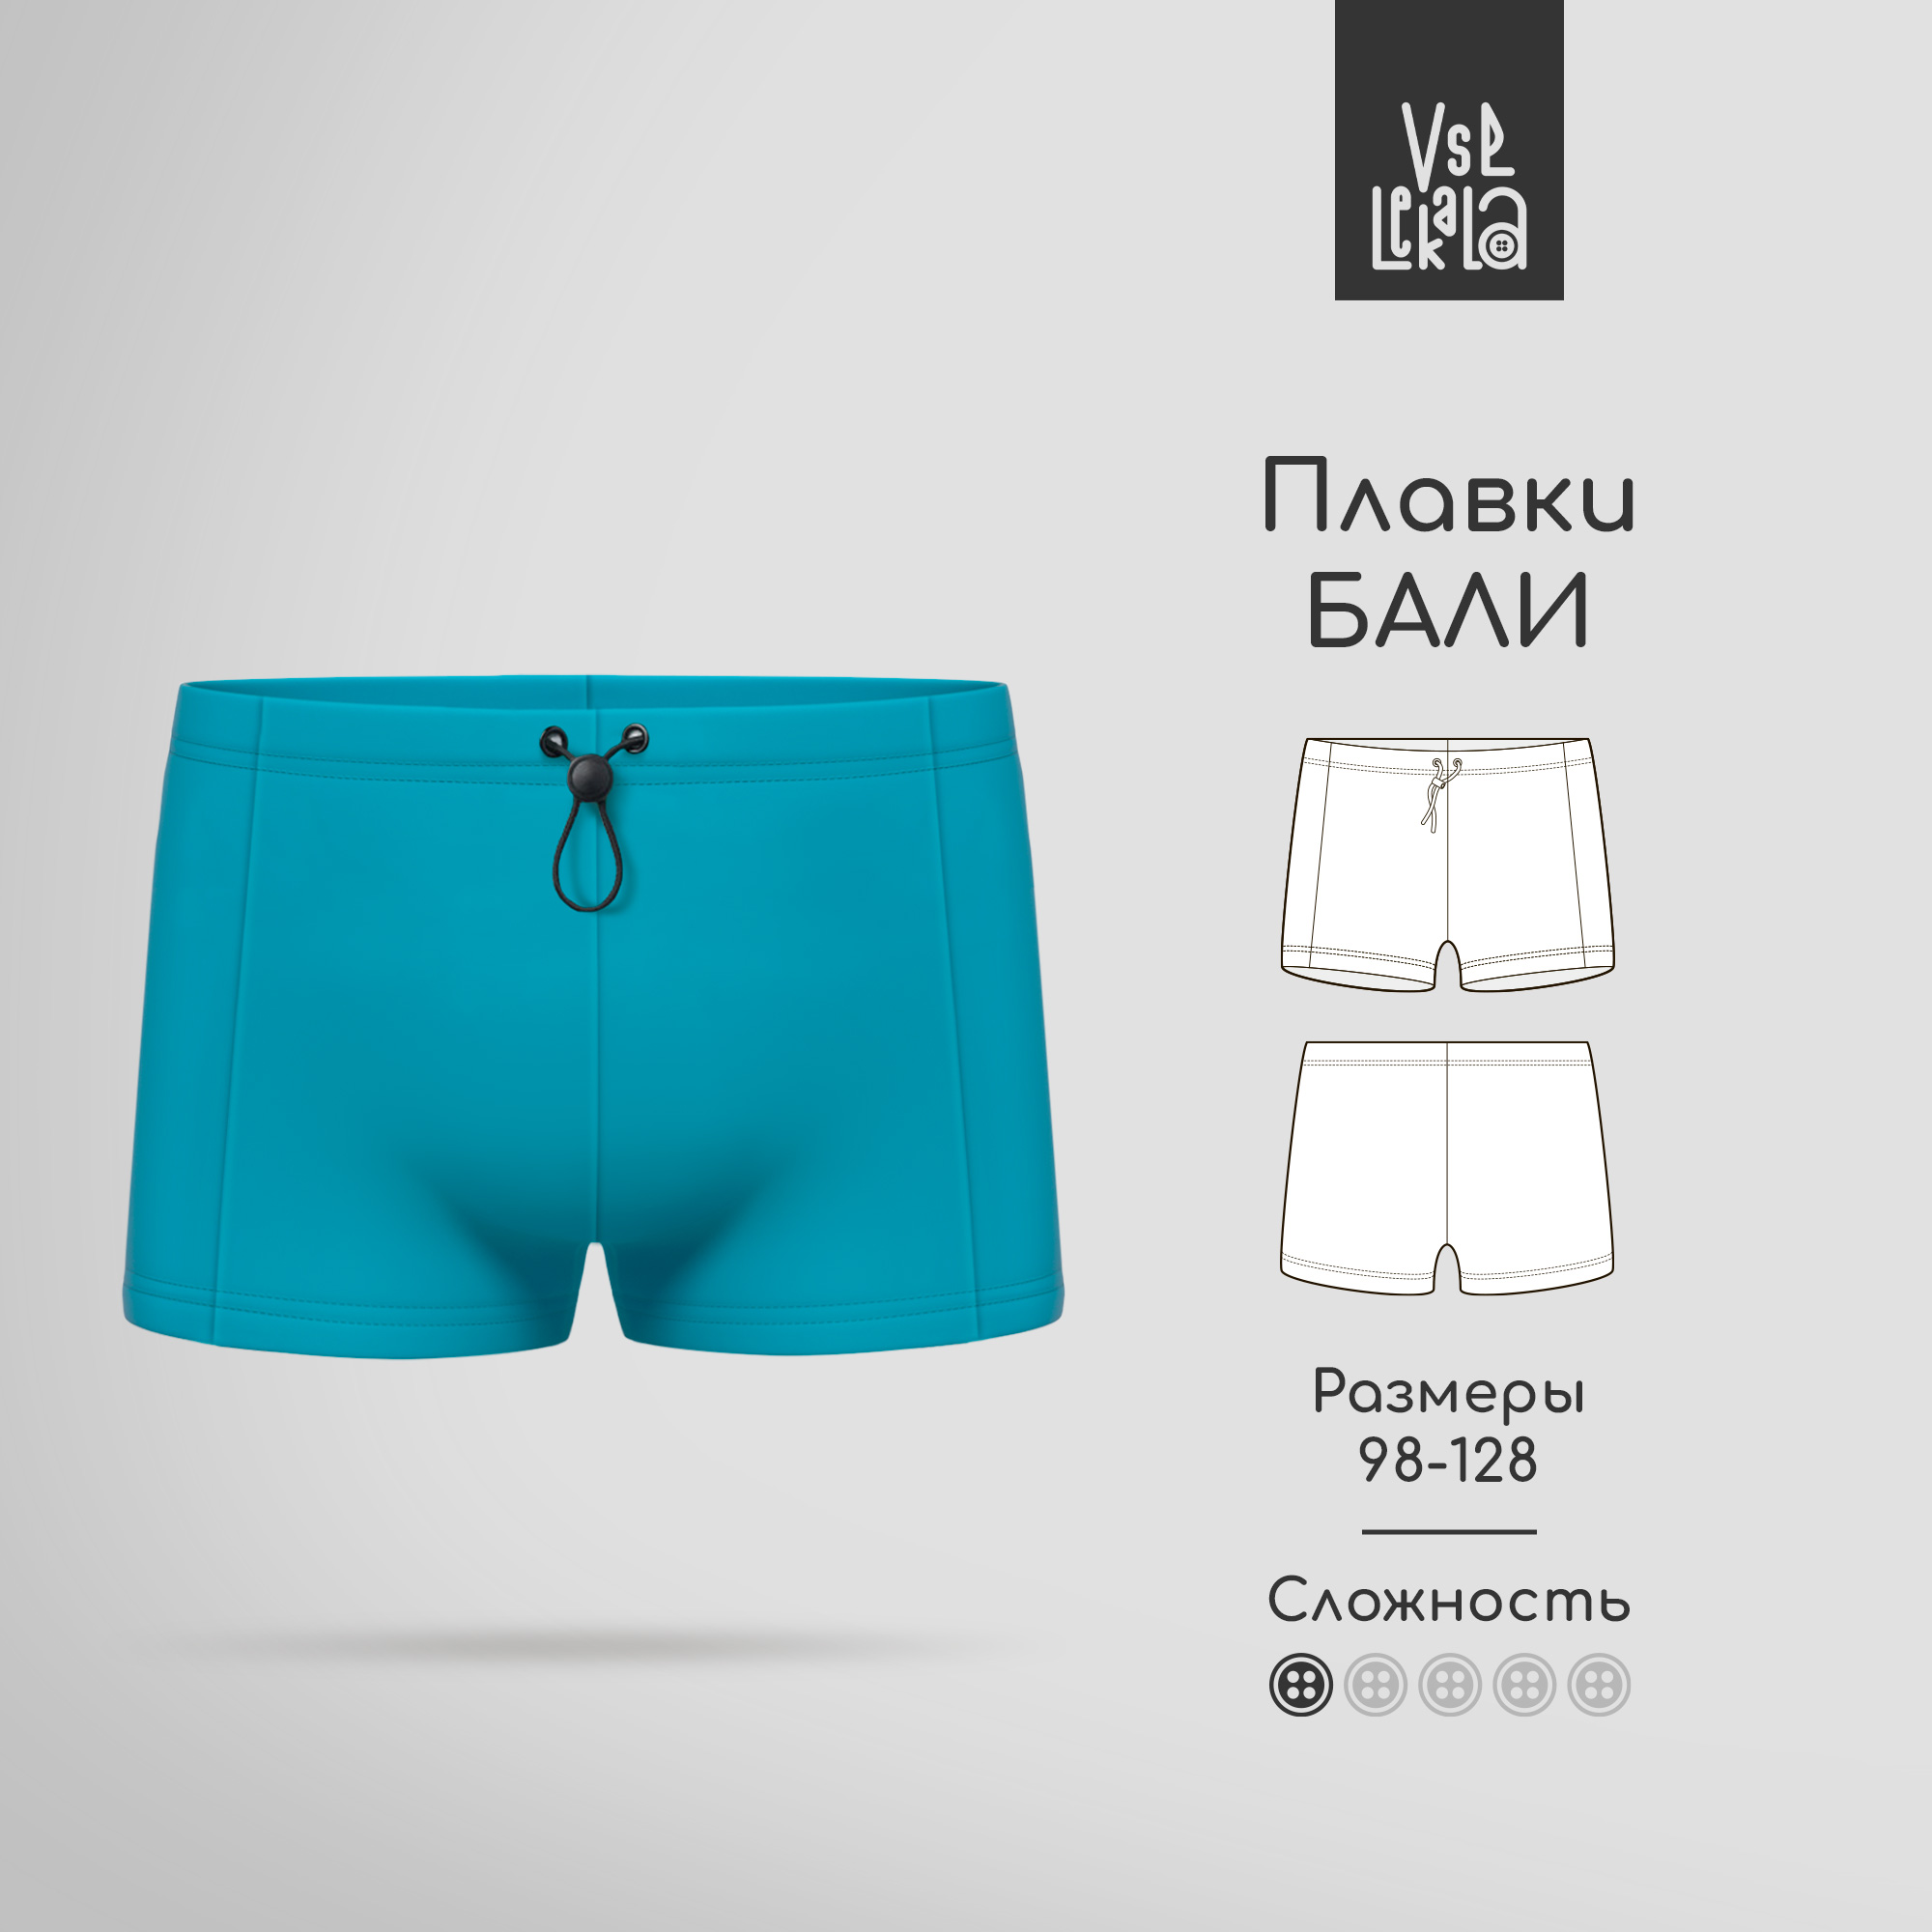 ᐈ Пляжная одежда для мужчин в интернет-магазине Mark Formelle